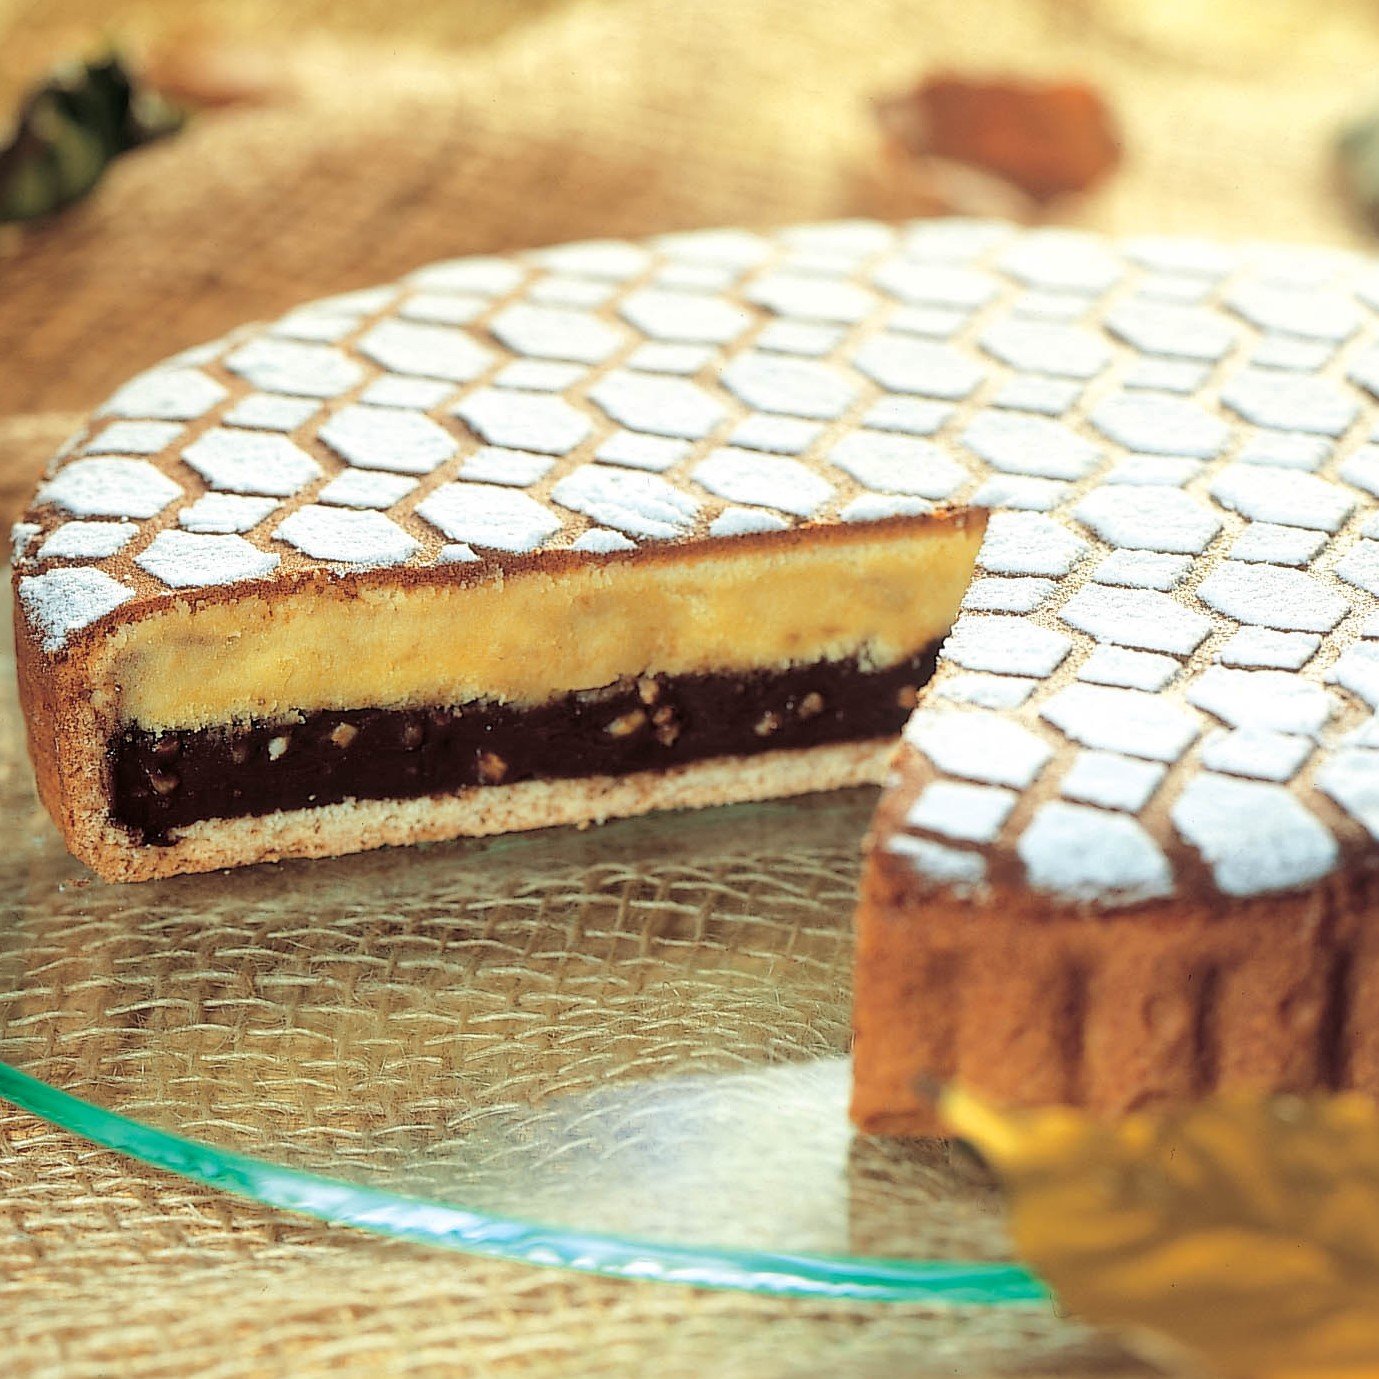 Crostata al Cioccolato BIndi è composta da una morbida pasta frolla con crema al cioccolato e nocciole.